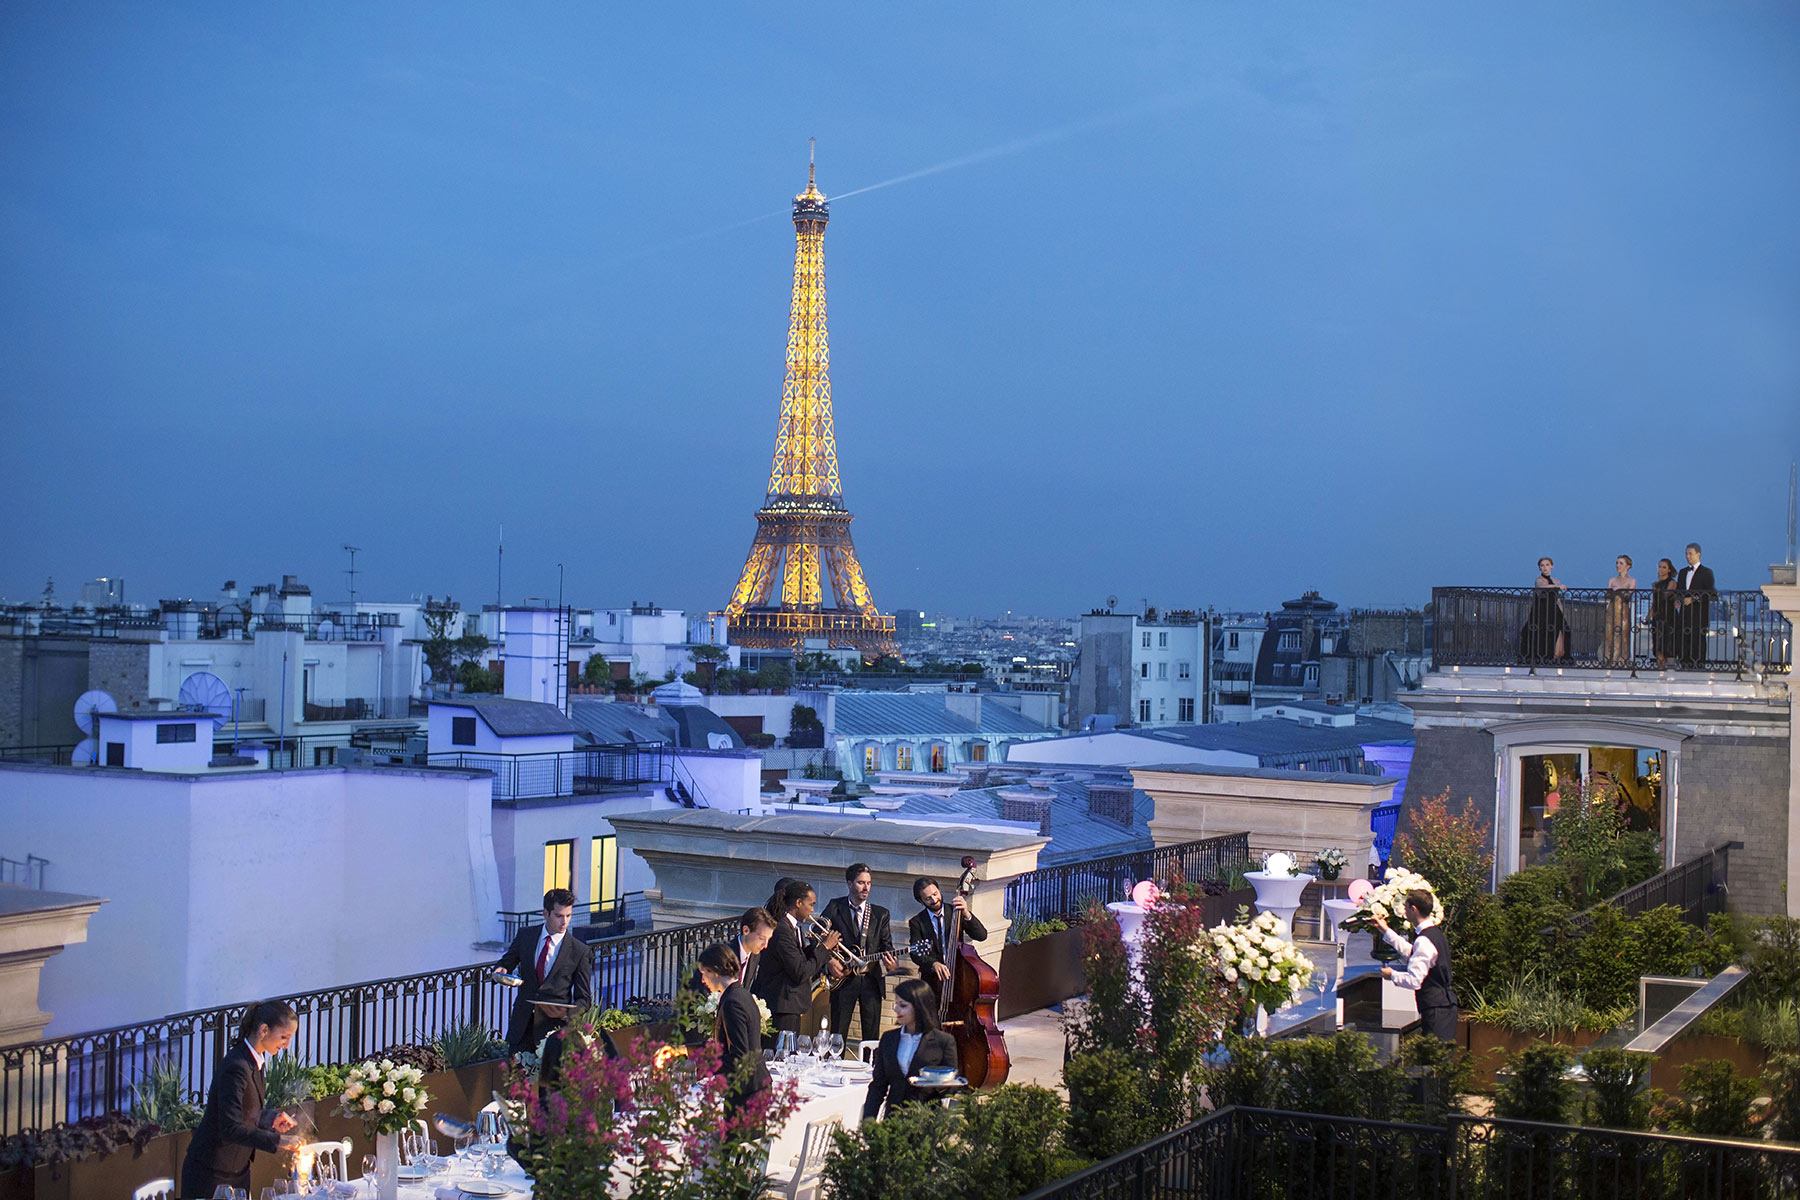 rooftop in paris